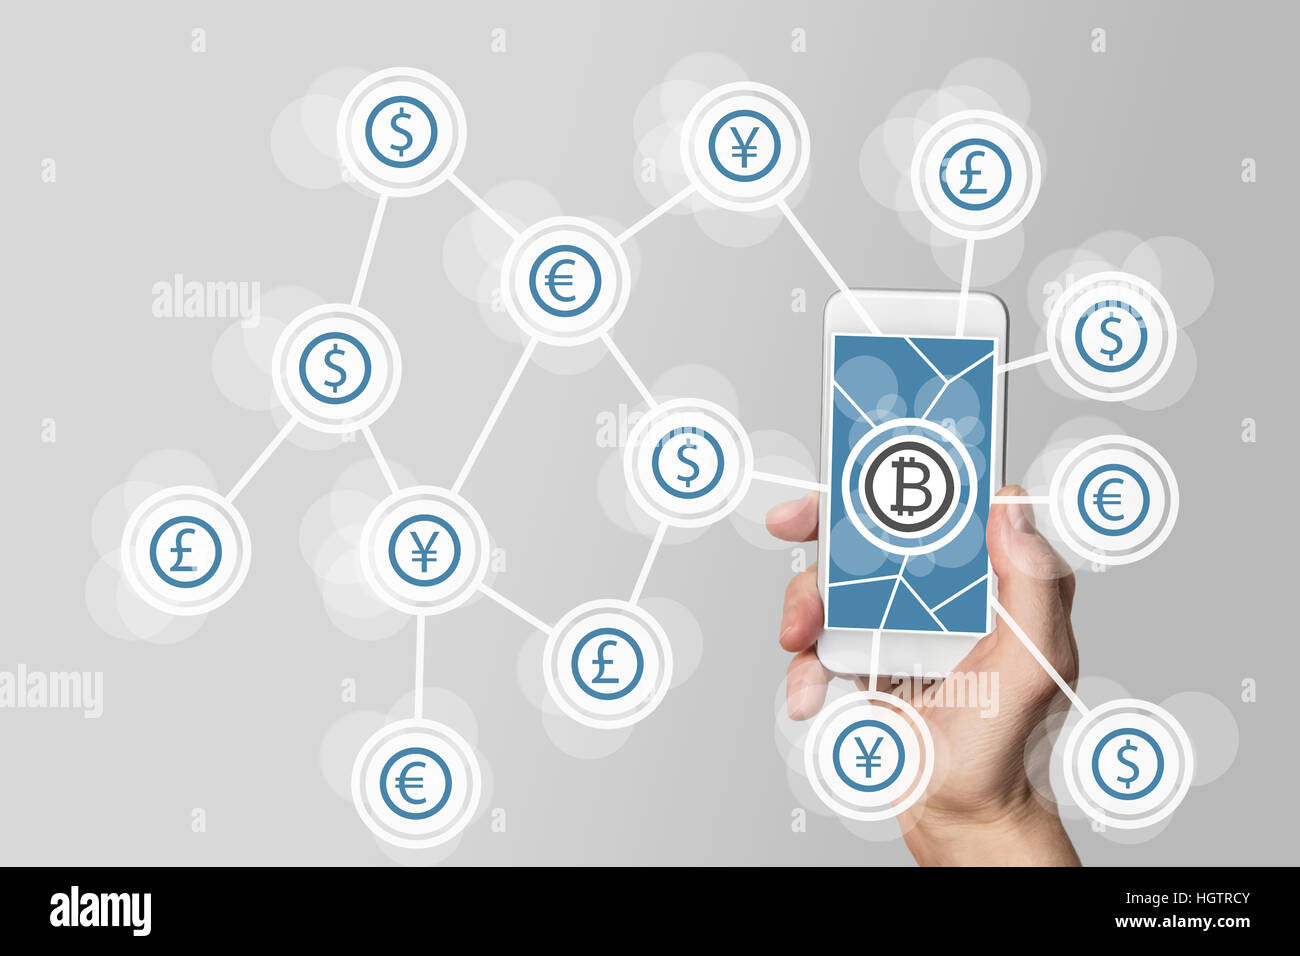 Blockchain et technologie bitcoin comme exemple de crypto-monnaie Banque D'Images